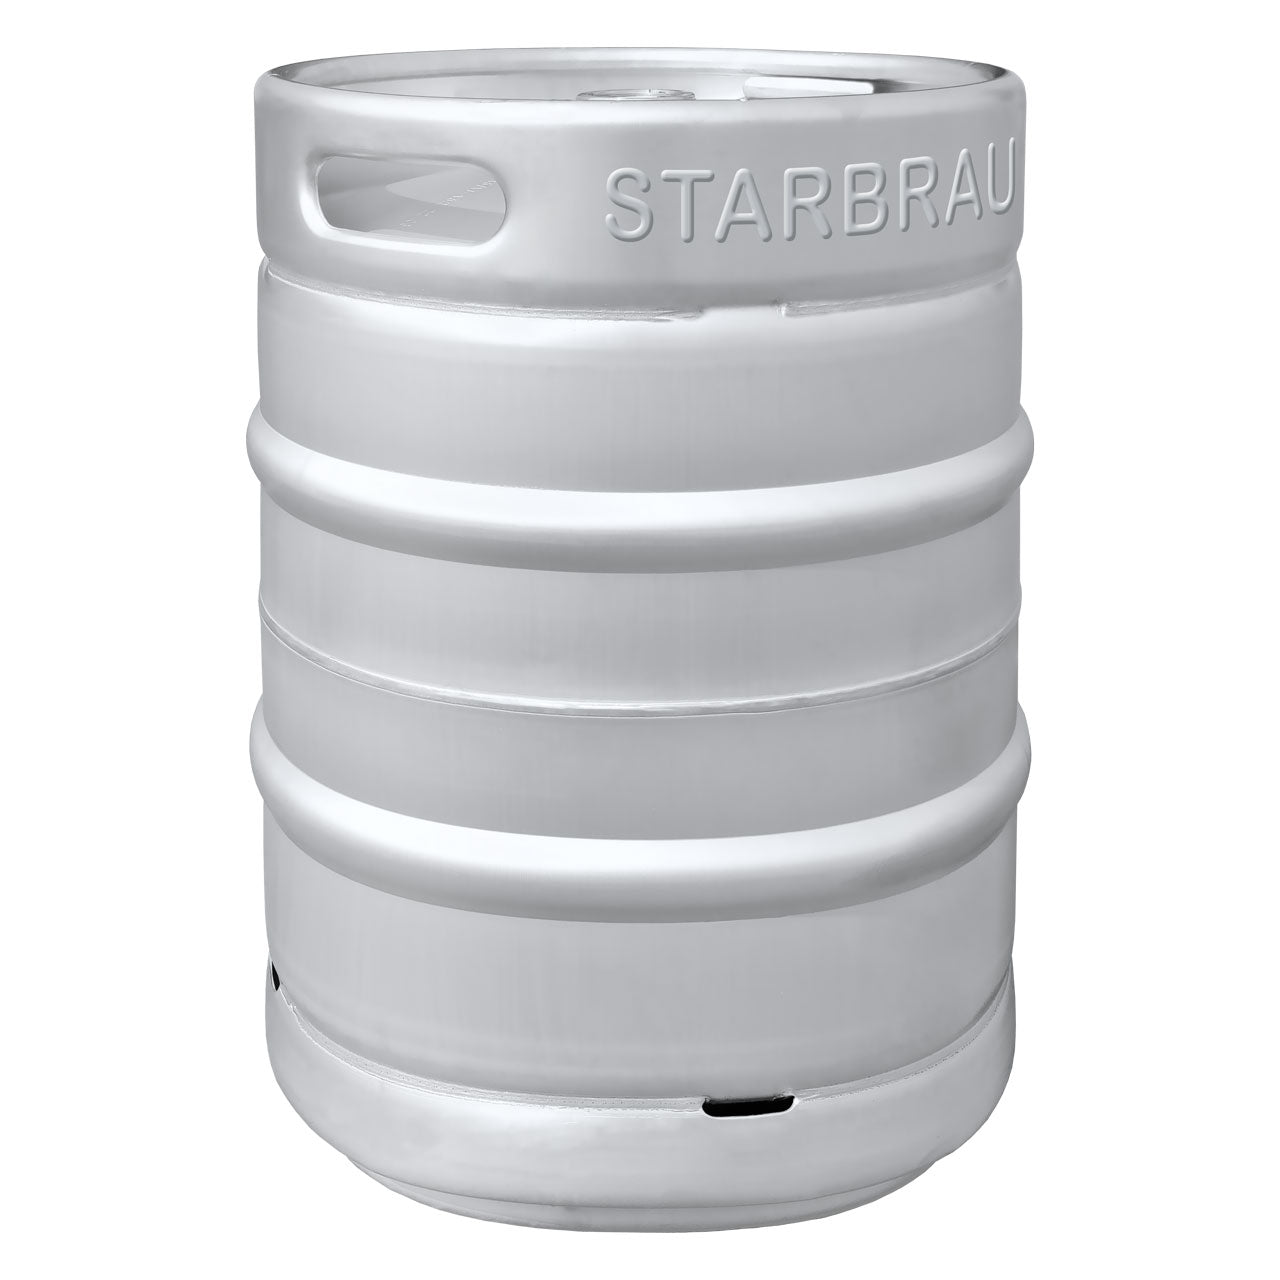 Starbrau 50 litre stainless steel keg